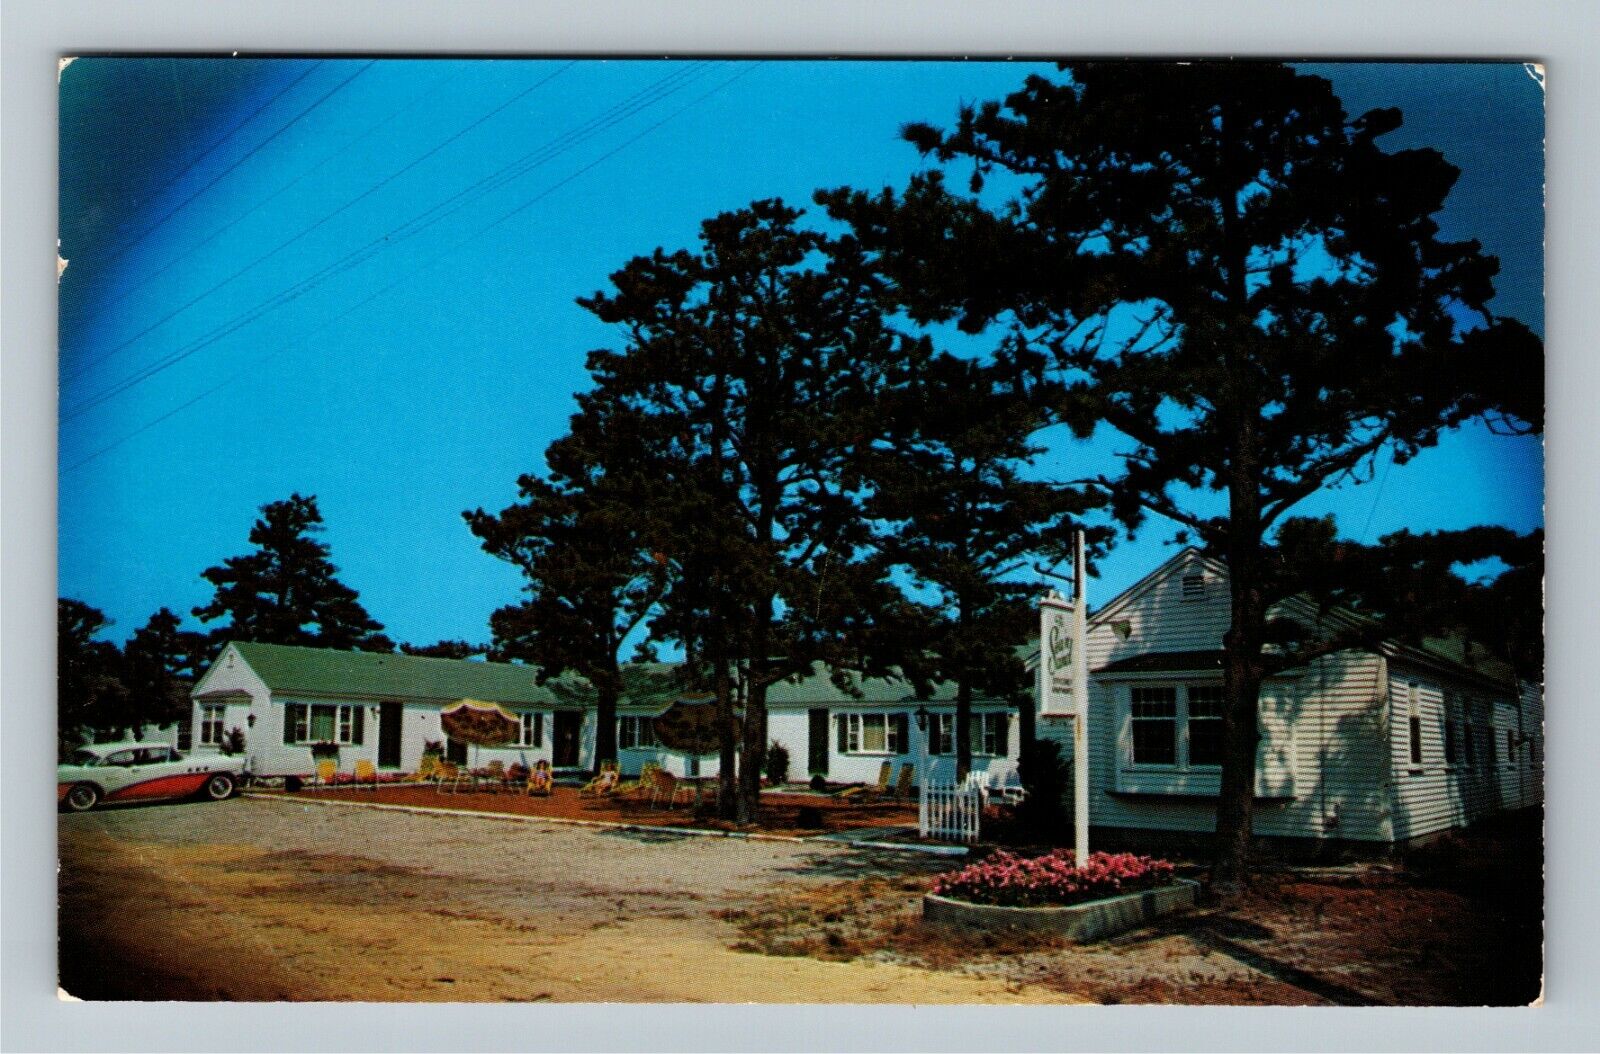 Cape Cod, MA-Massachusetts, Sea \'N Sand Resort Motel, Vintage Postcard